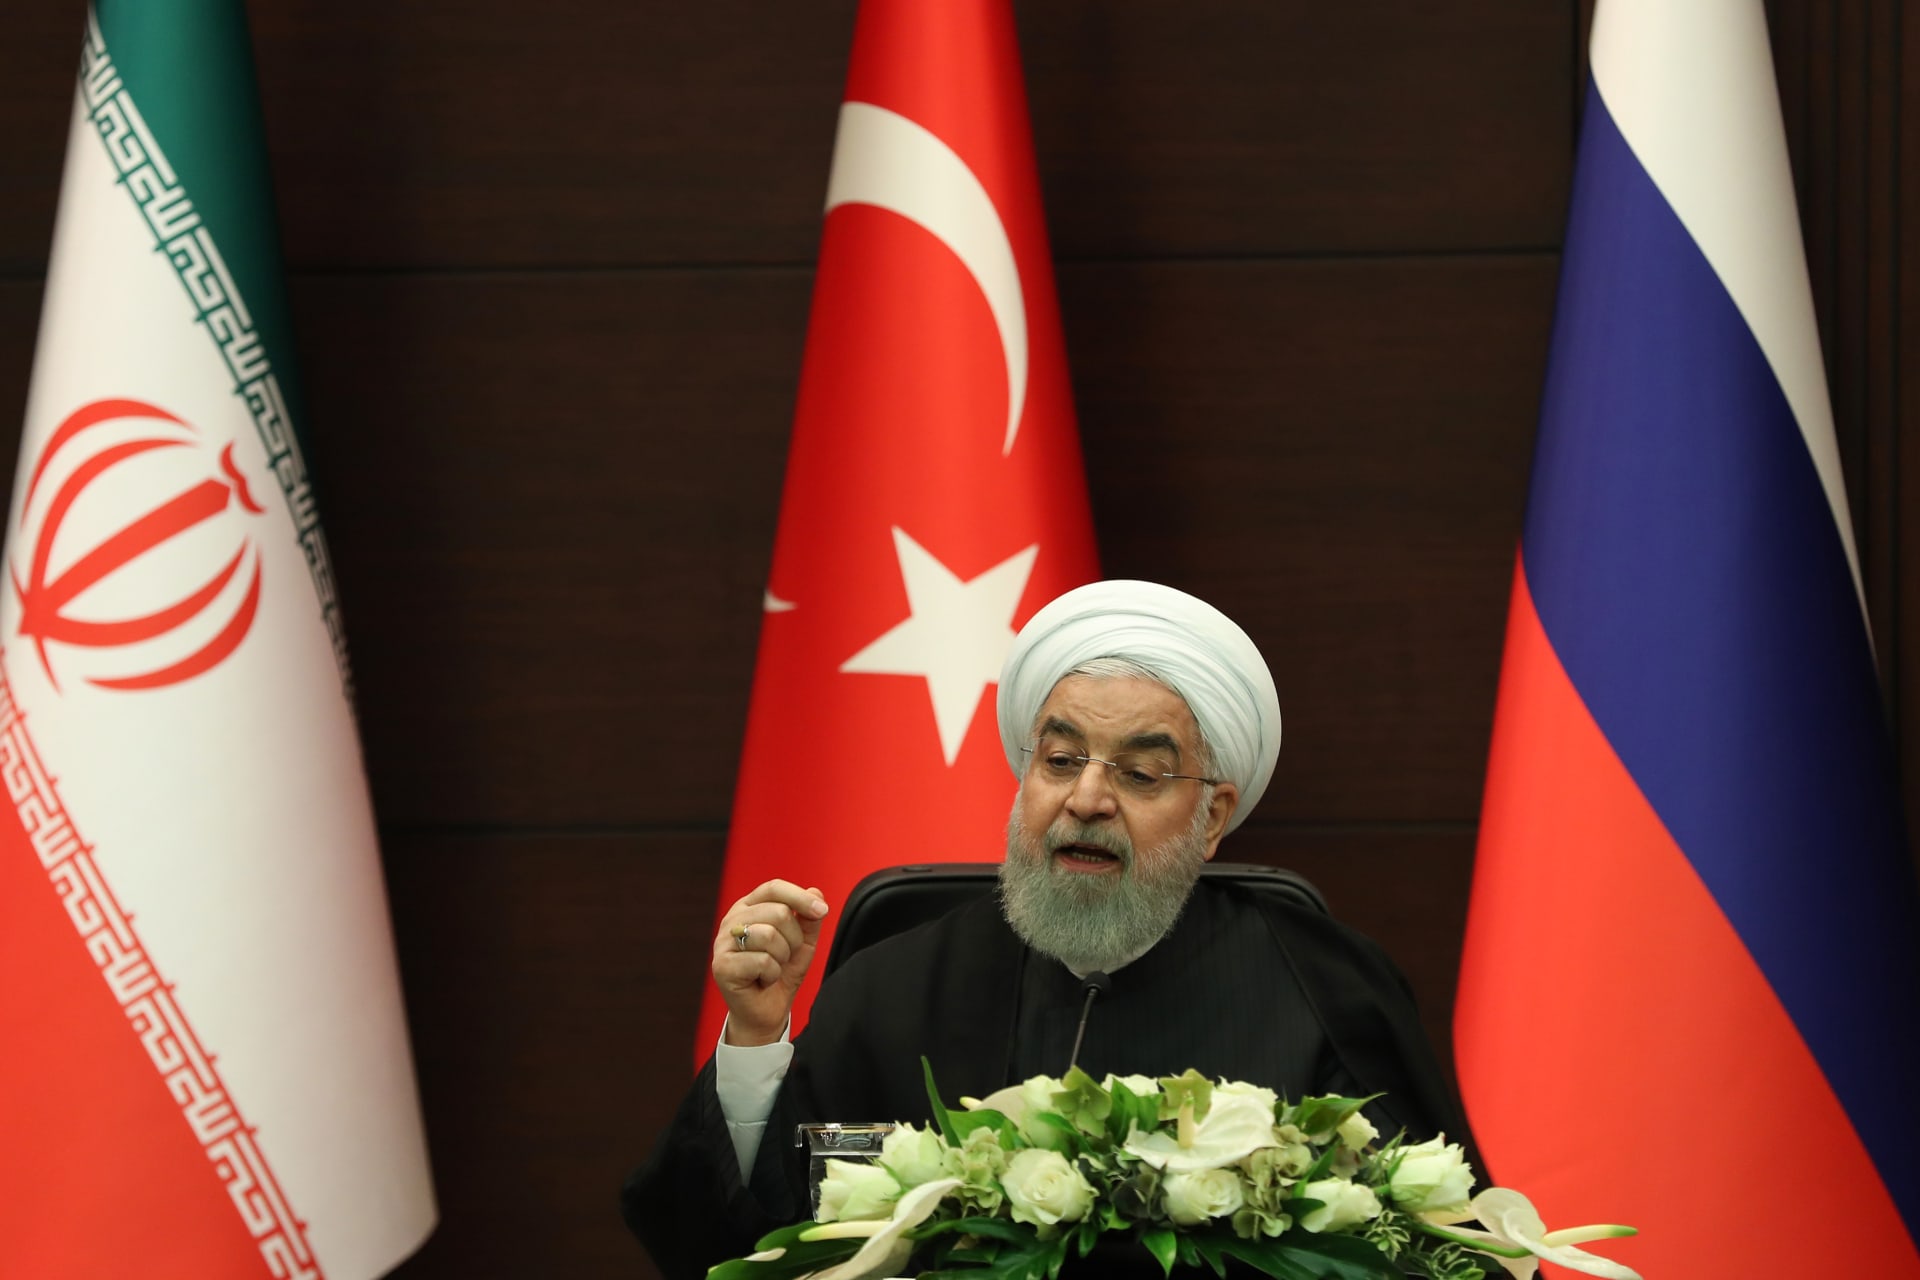 روحاني: إعلان "هرمز للسلام" في الأمم المتحدة الأسبوع الجاري